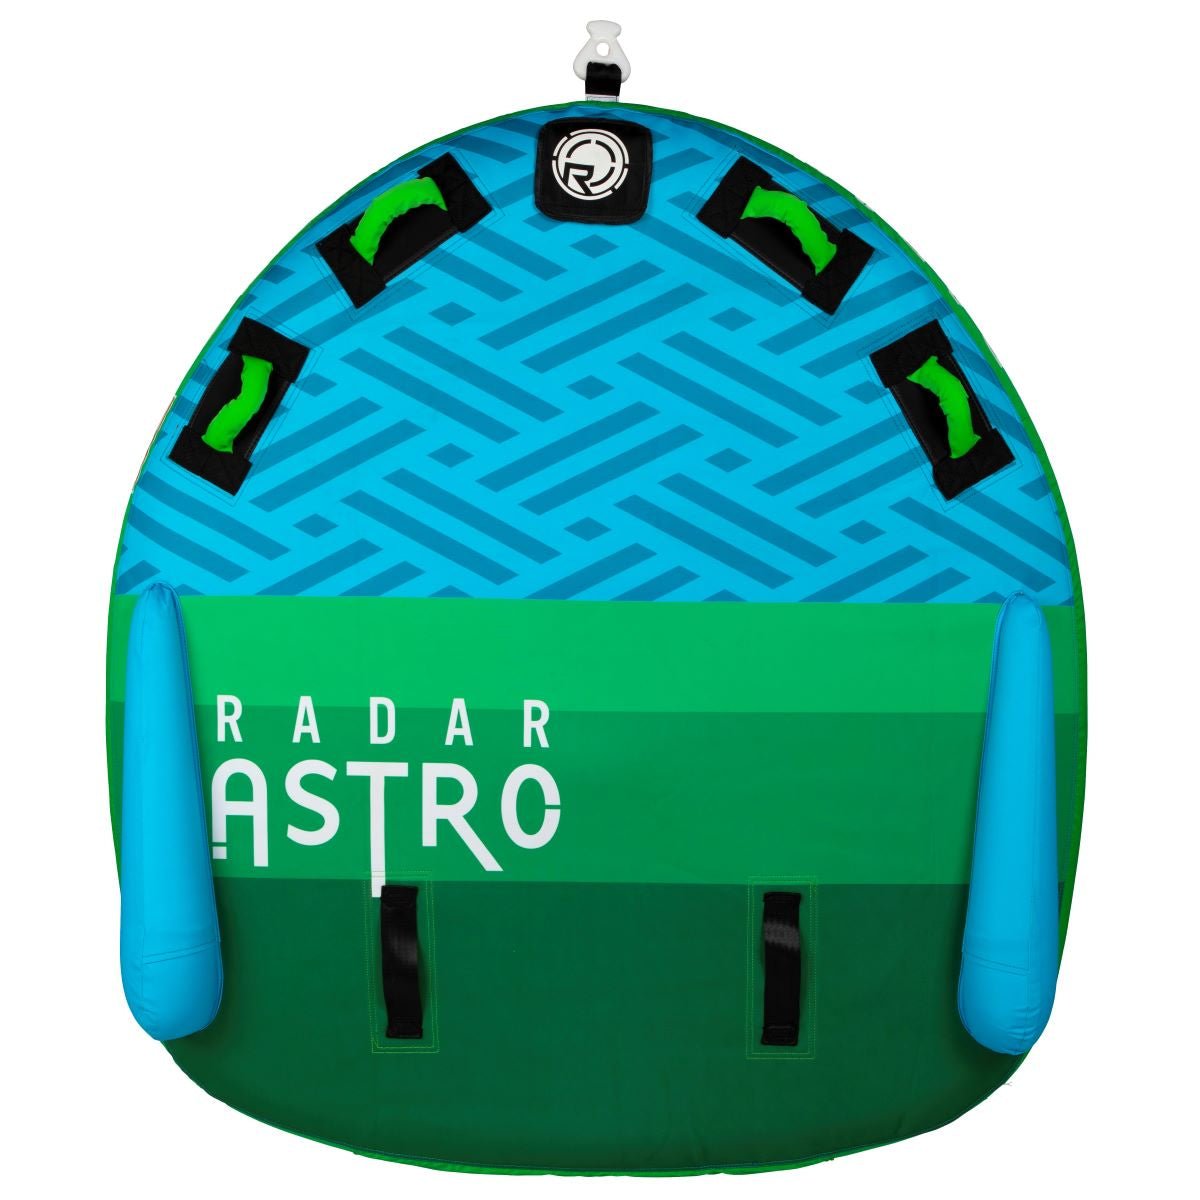 Radar Astro Marshmallow Top 2 Person Tube - BoardCo